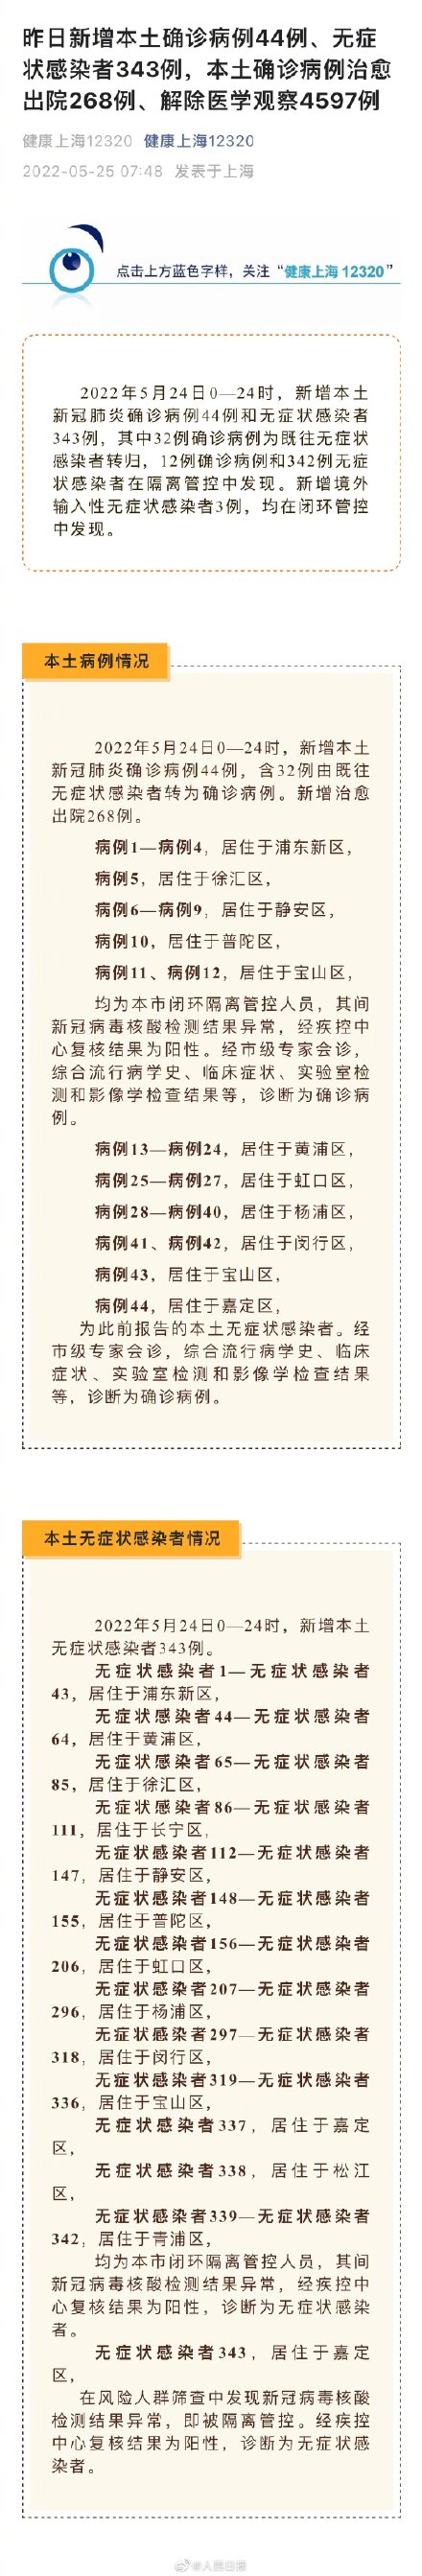 上海新增本土确诊病例44例、无症状感染者343例